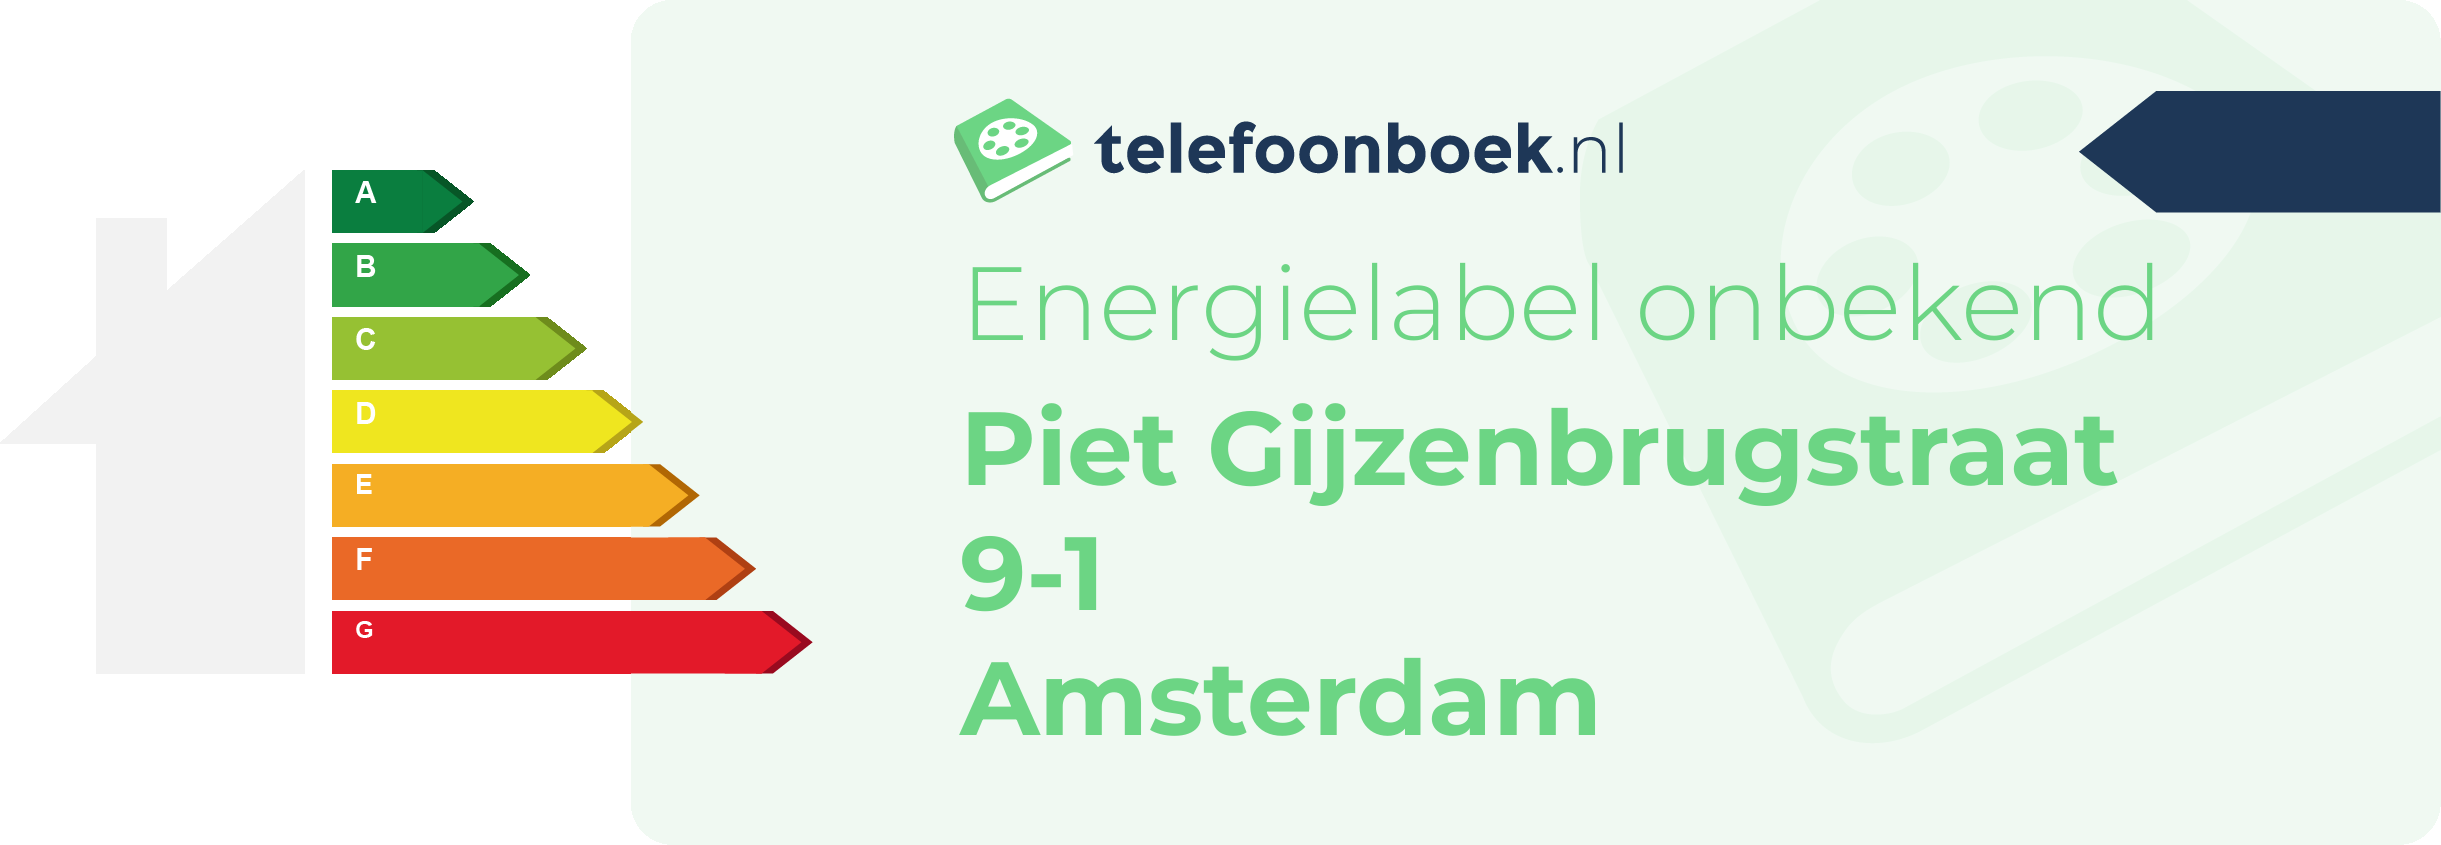 Energielabel Piet Gijzenbrugstraat 9-1 Amsterdam